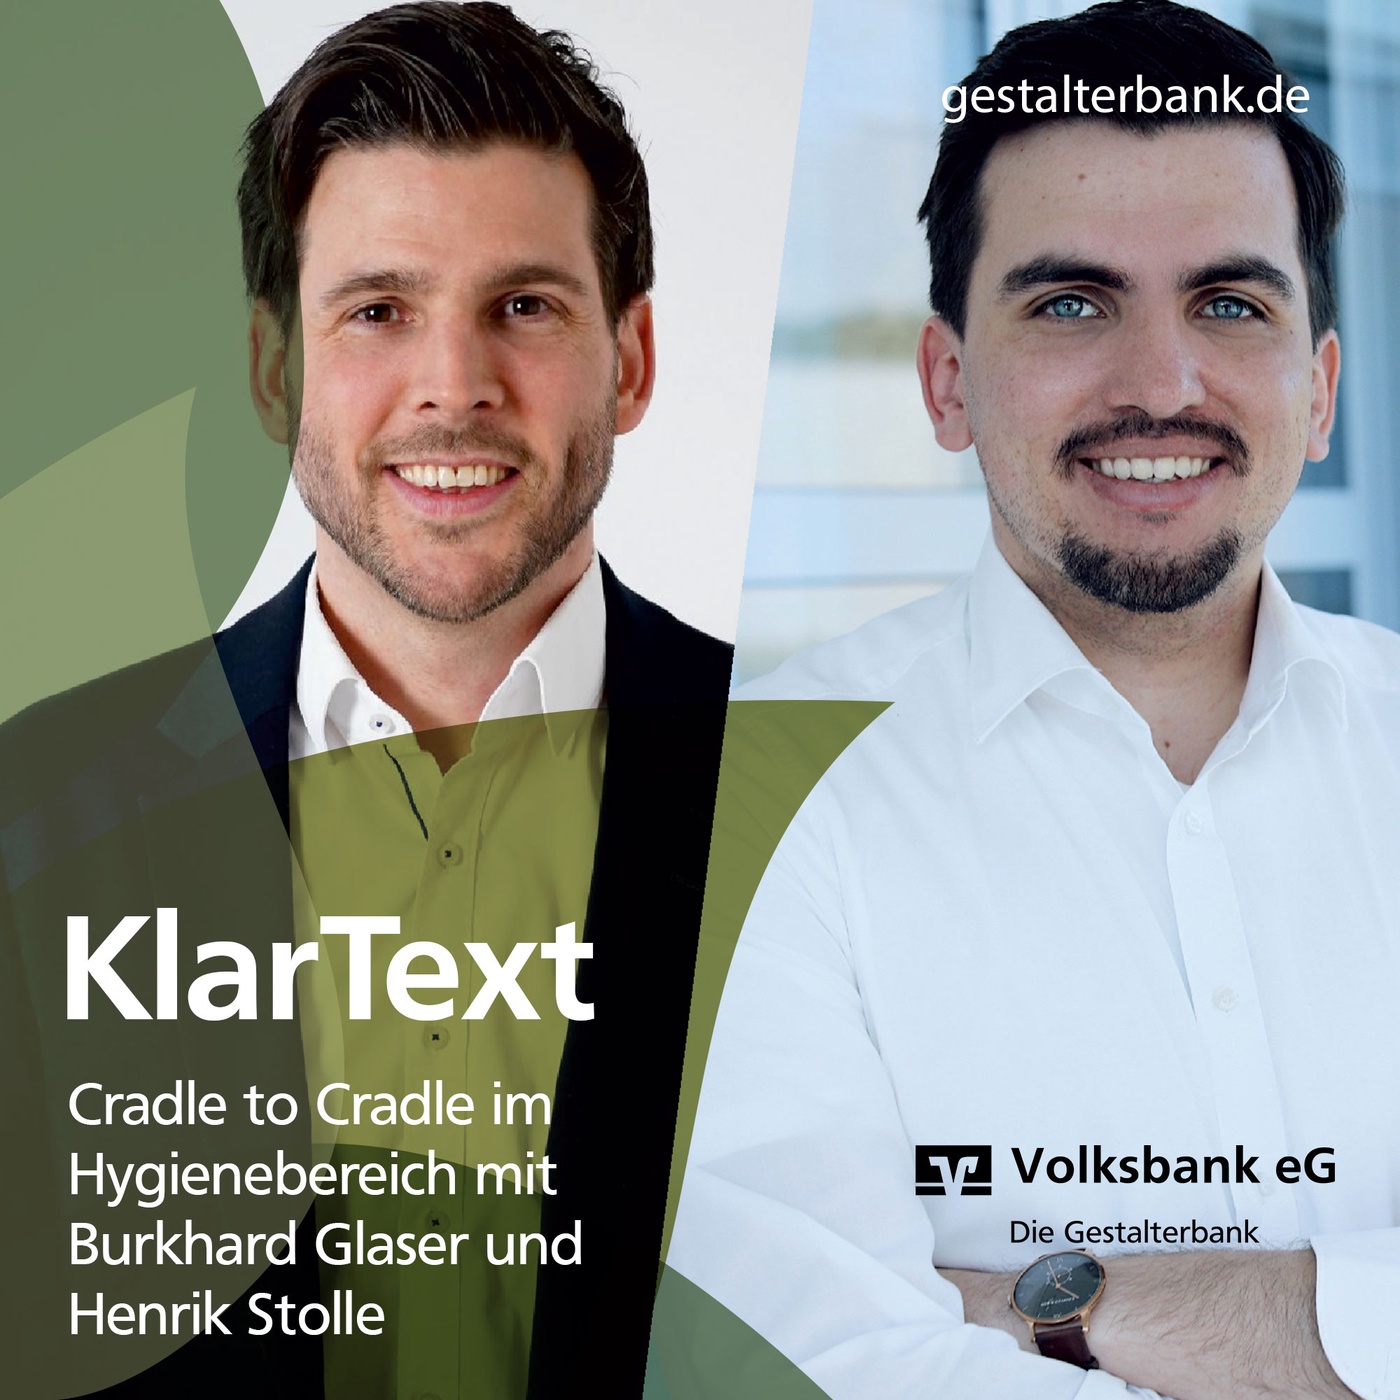 Episode 11: KlarText über Cradle to Cradle im Hygienebereich mit Burkhard Glaser und Henrik Stolle